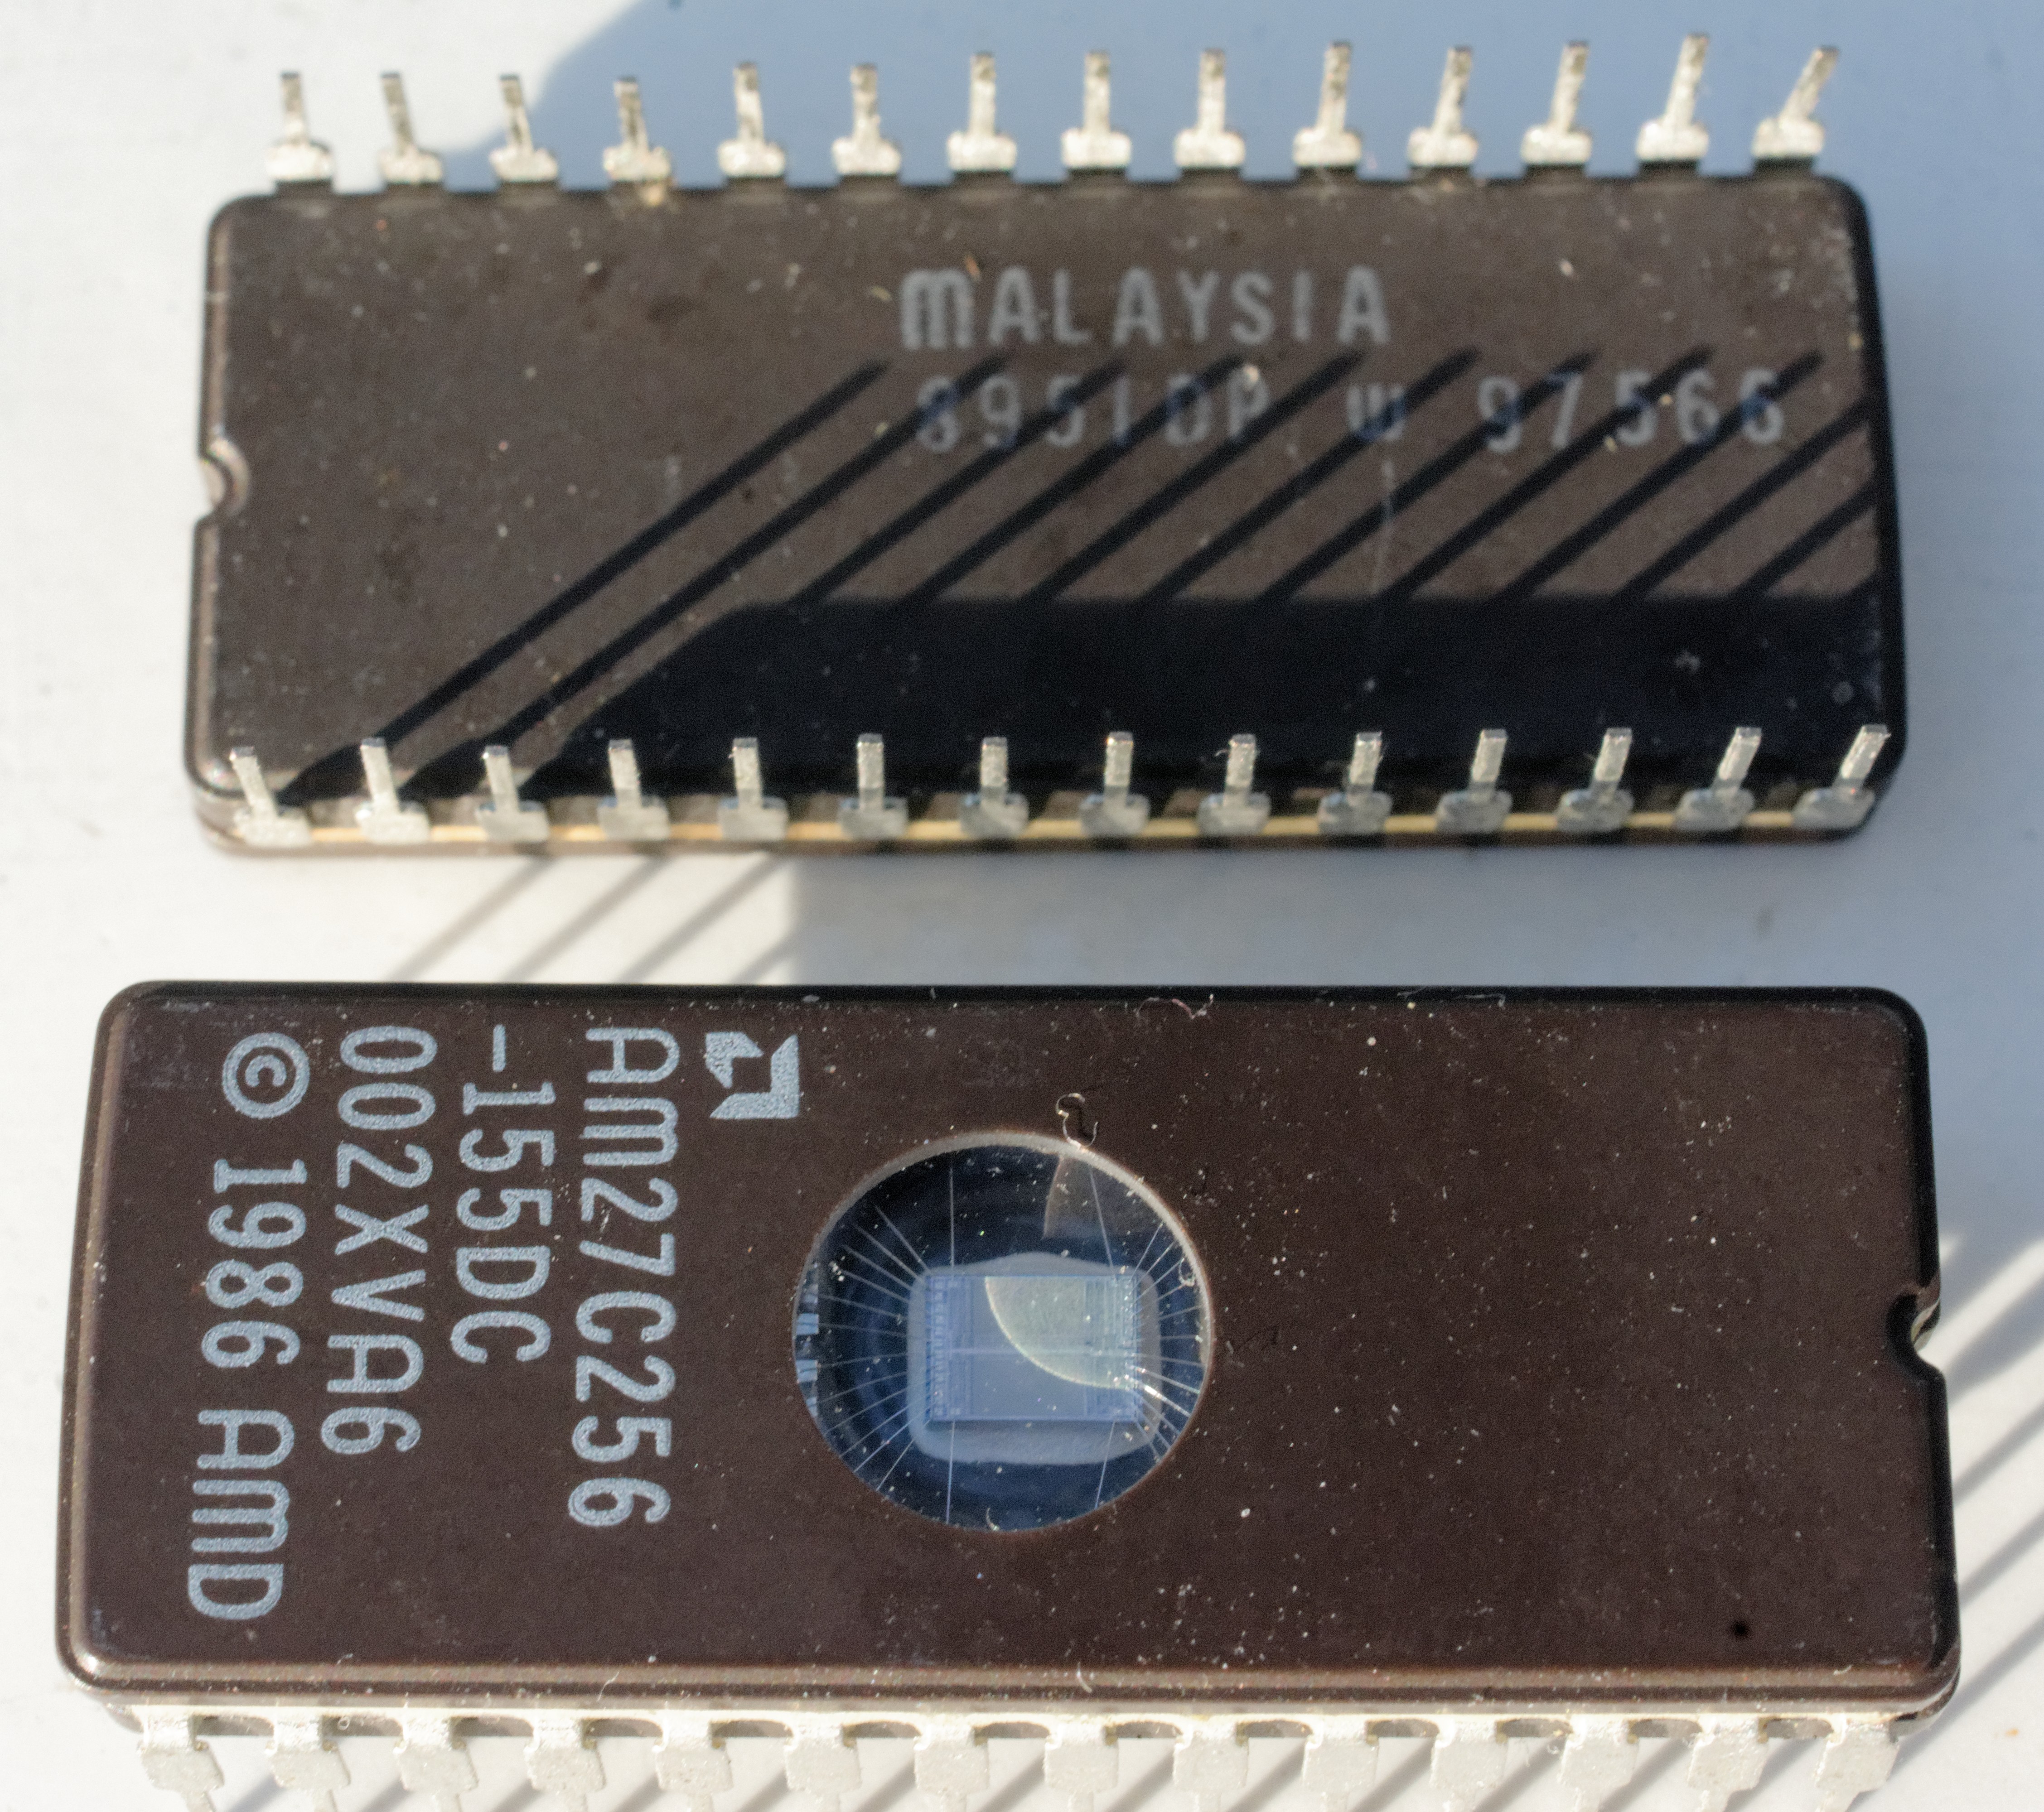 Pair of BIOS chips